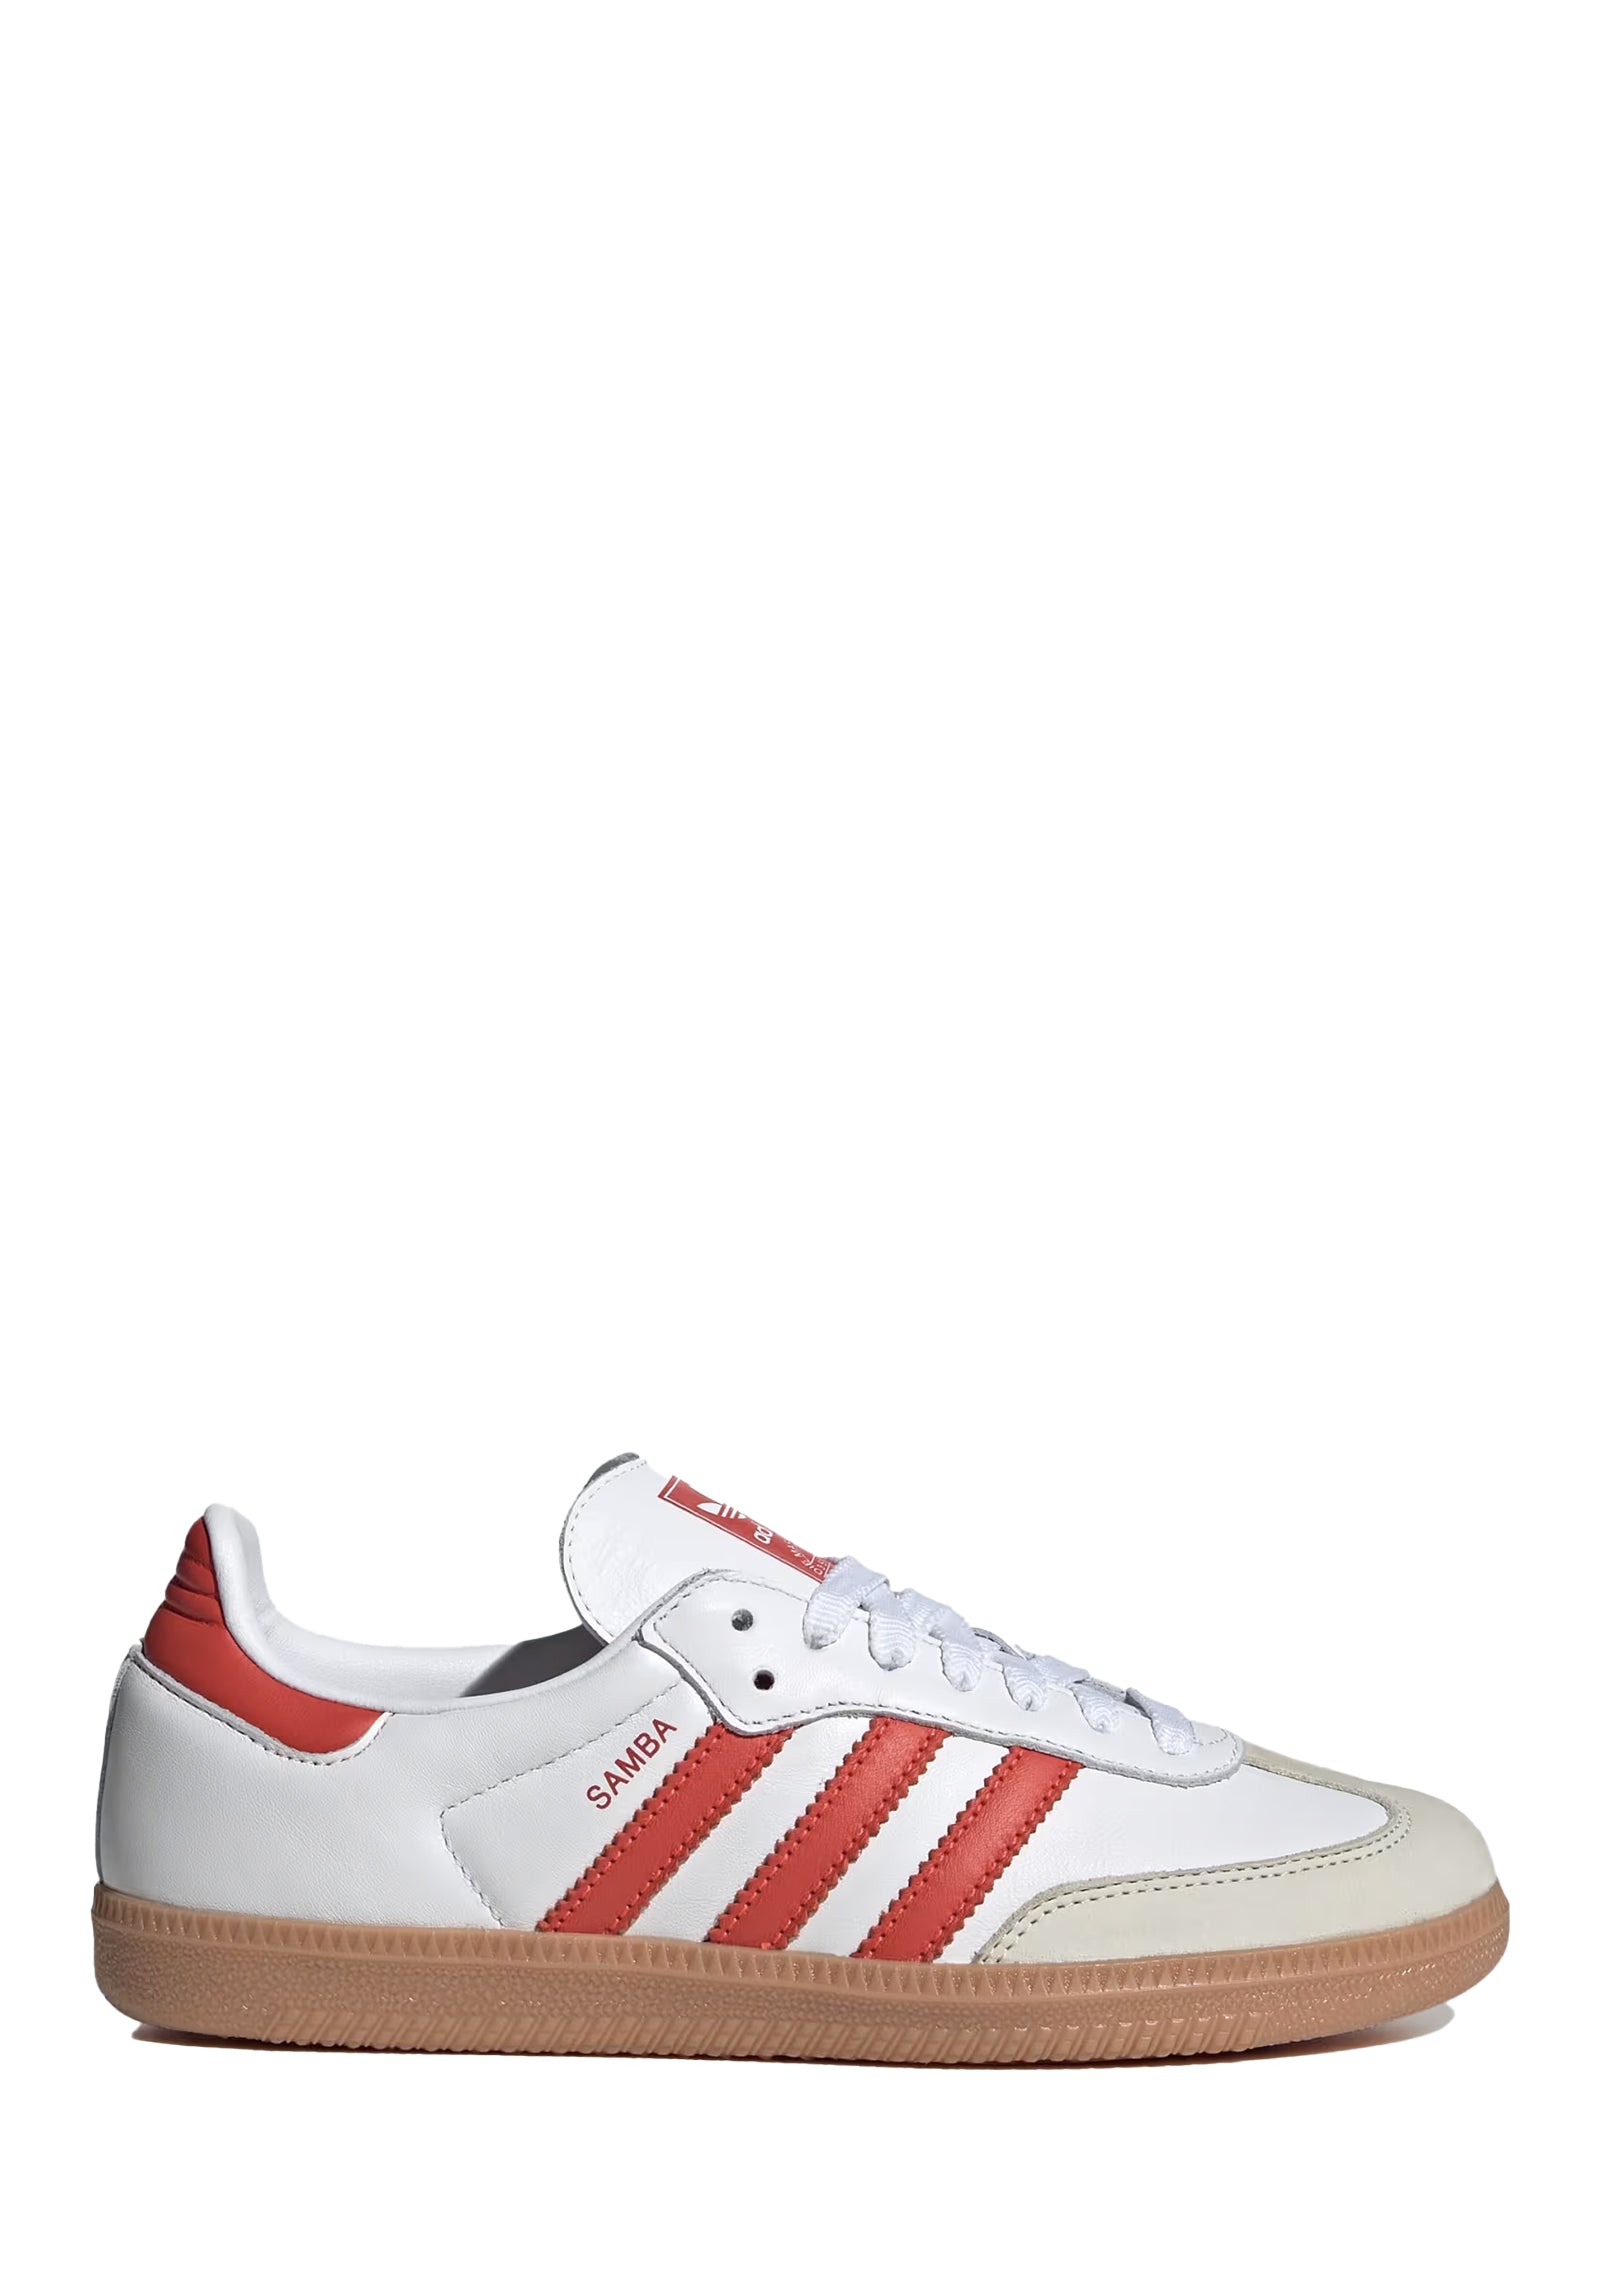 Sneakers Samba Og red/white